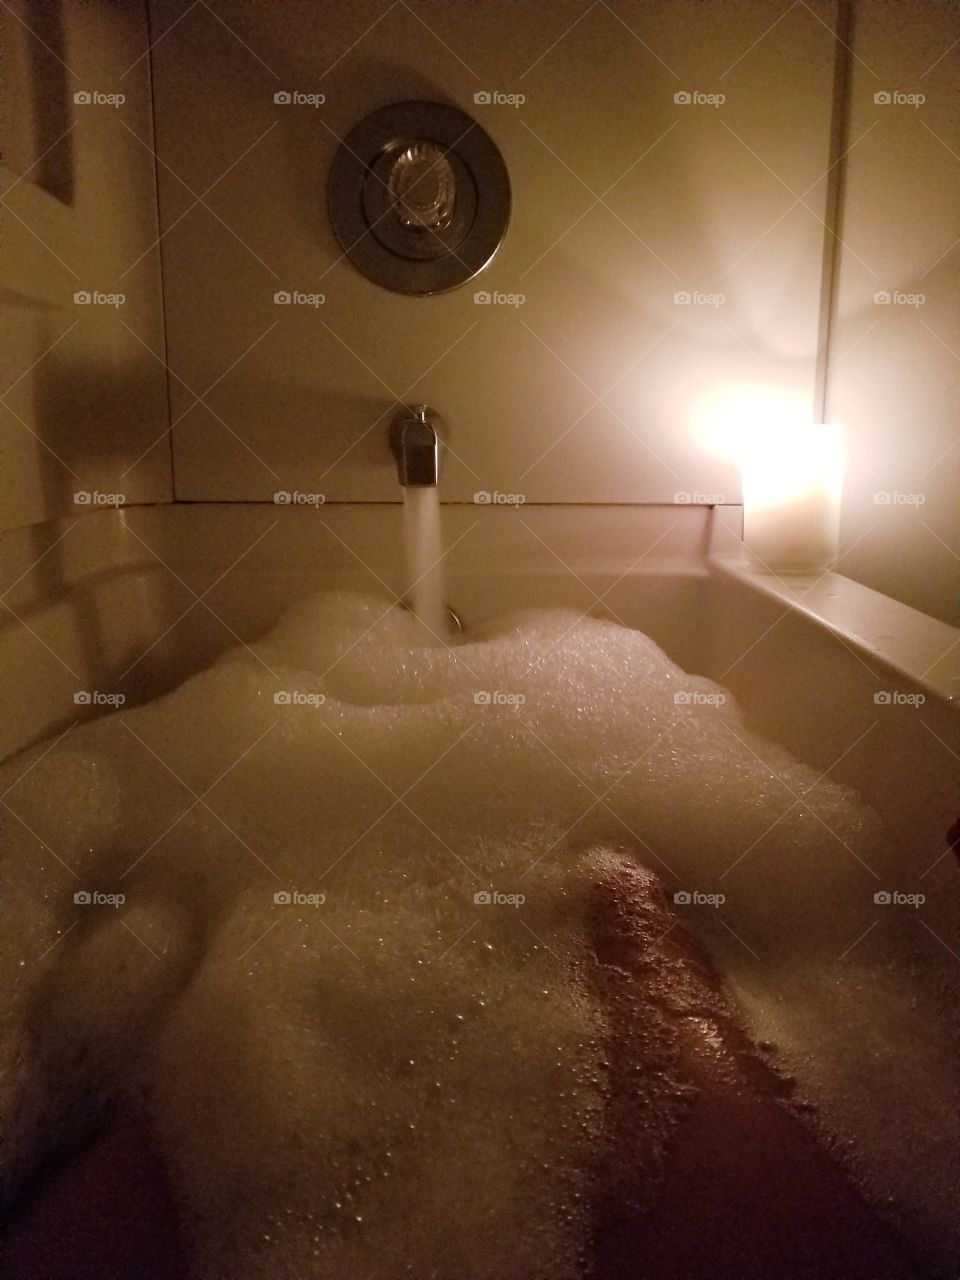 Relaxing Bath